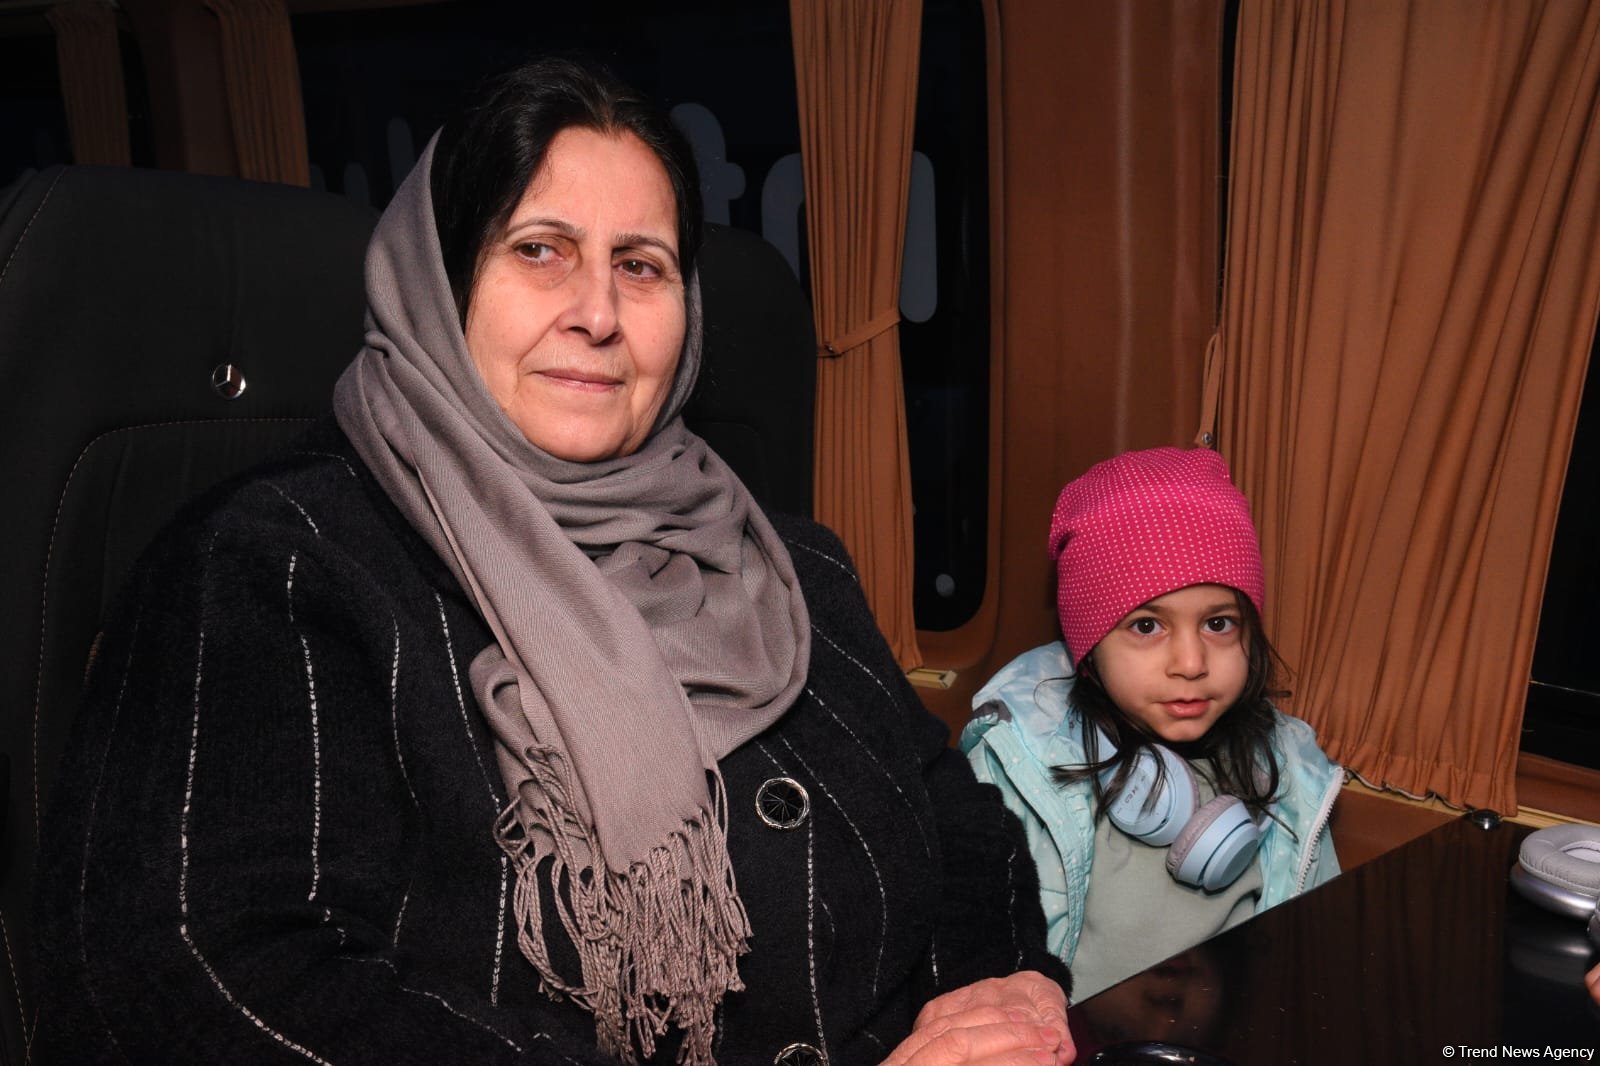 В Физули возвращаются еще 35 семей бывших вынужденных переселенцев (ФОТО/ВИДЕО)